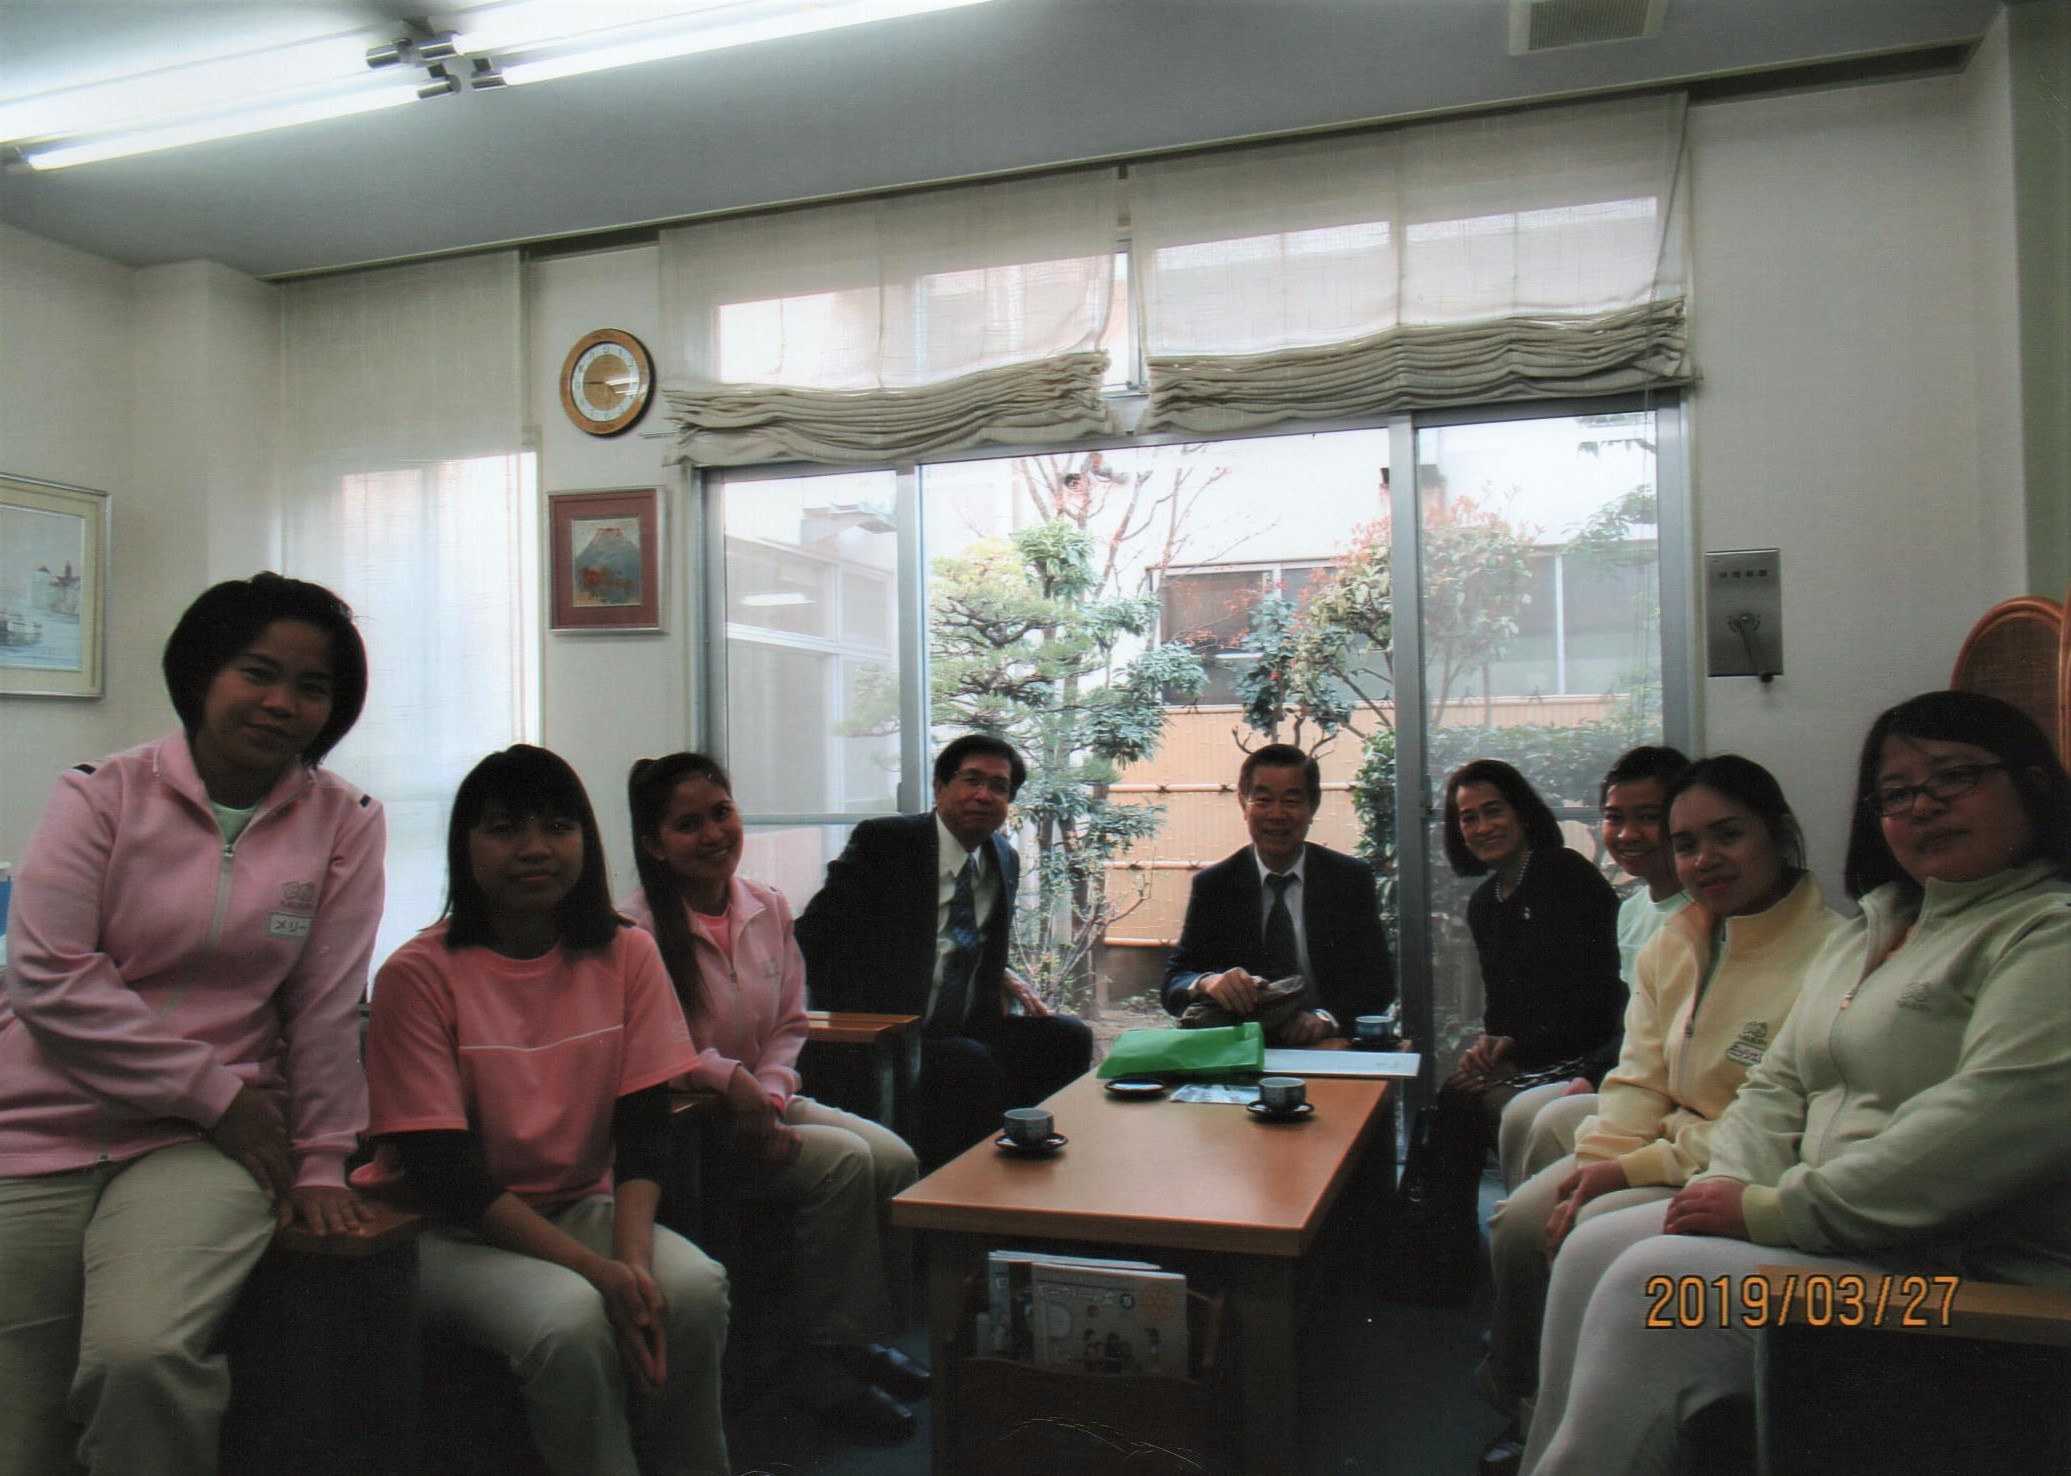 Caregivers of Fukujuen together with Mr. Hideyo Sato, Mrs. Marietta Sato and Mr. Katsumi Furuta.